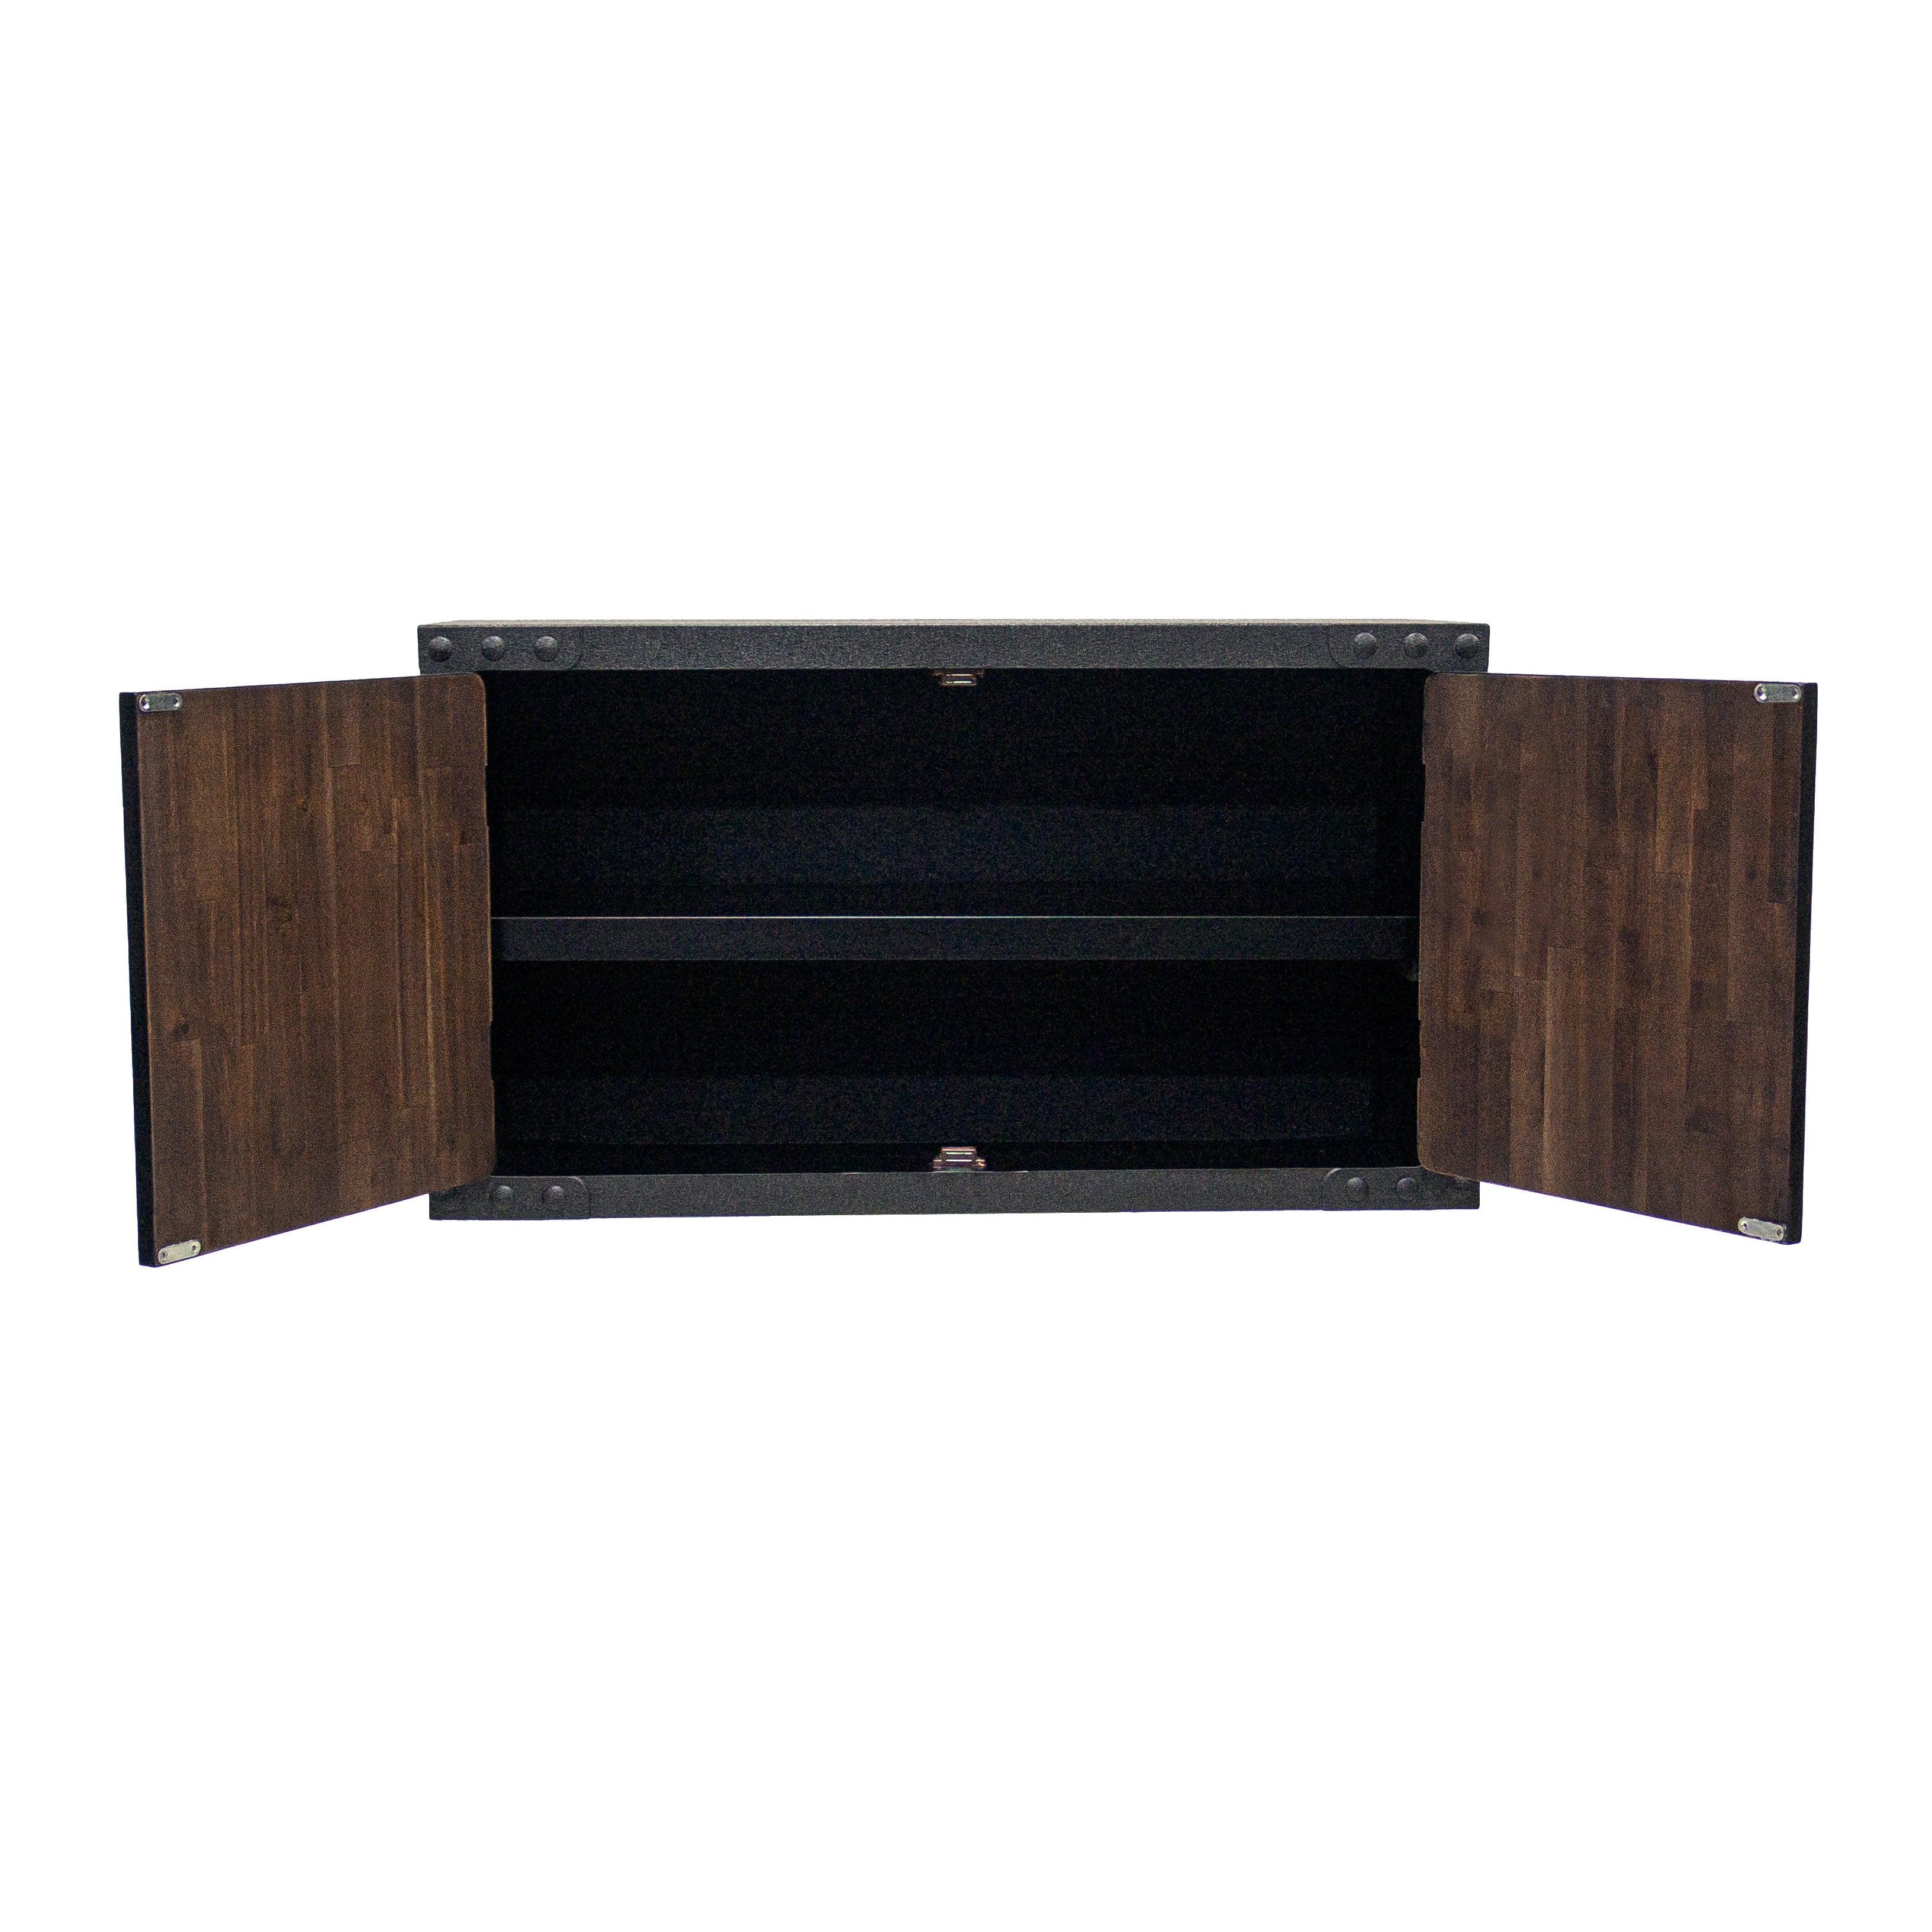 https://durasheds.com/cdn/shop/products/duramax-garage-storage-duramax-3-piece-garage-set-featuring-workbench-and-cabinets-37200379871469.jpg?v=1682981062